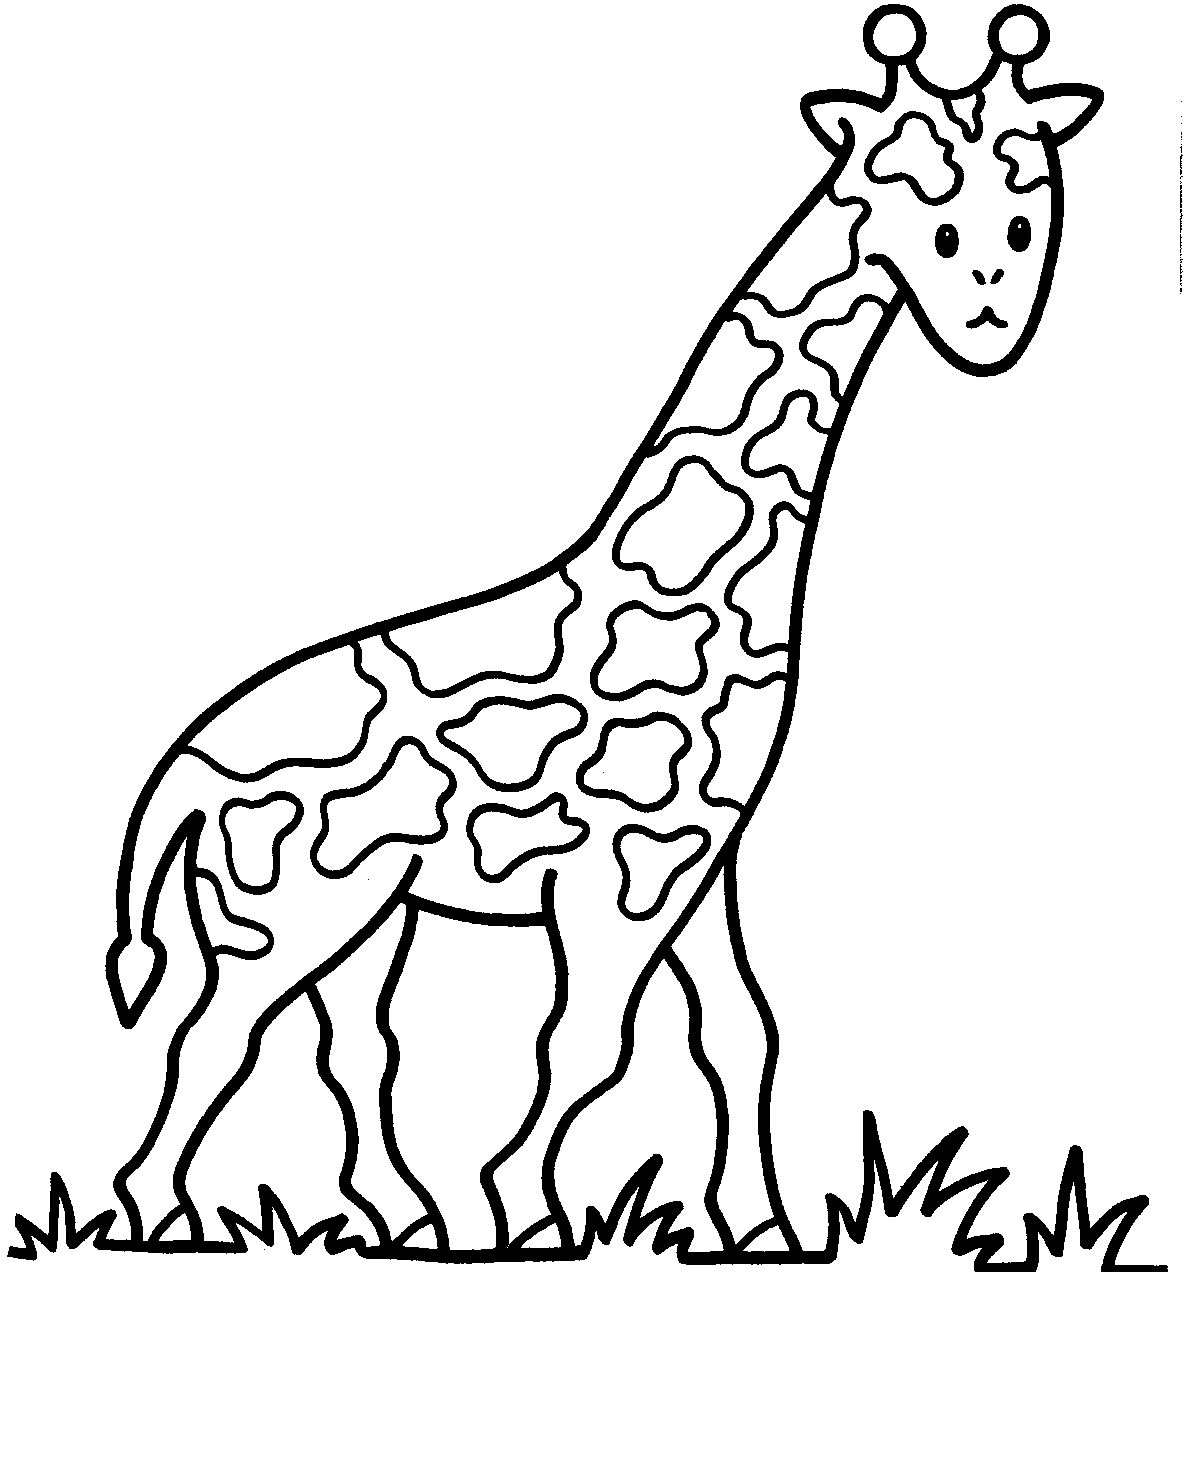 Una giraffa da stampare e da colorare per bambini e bambine